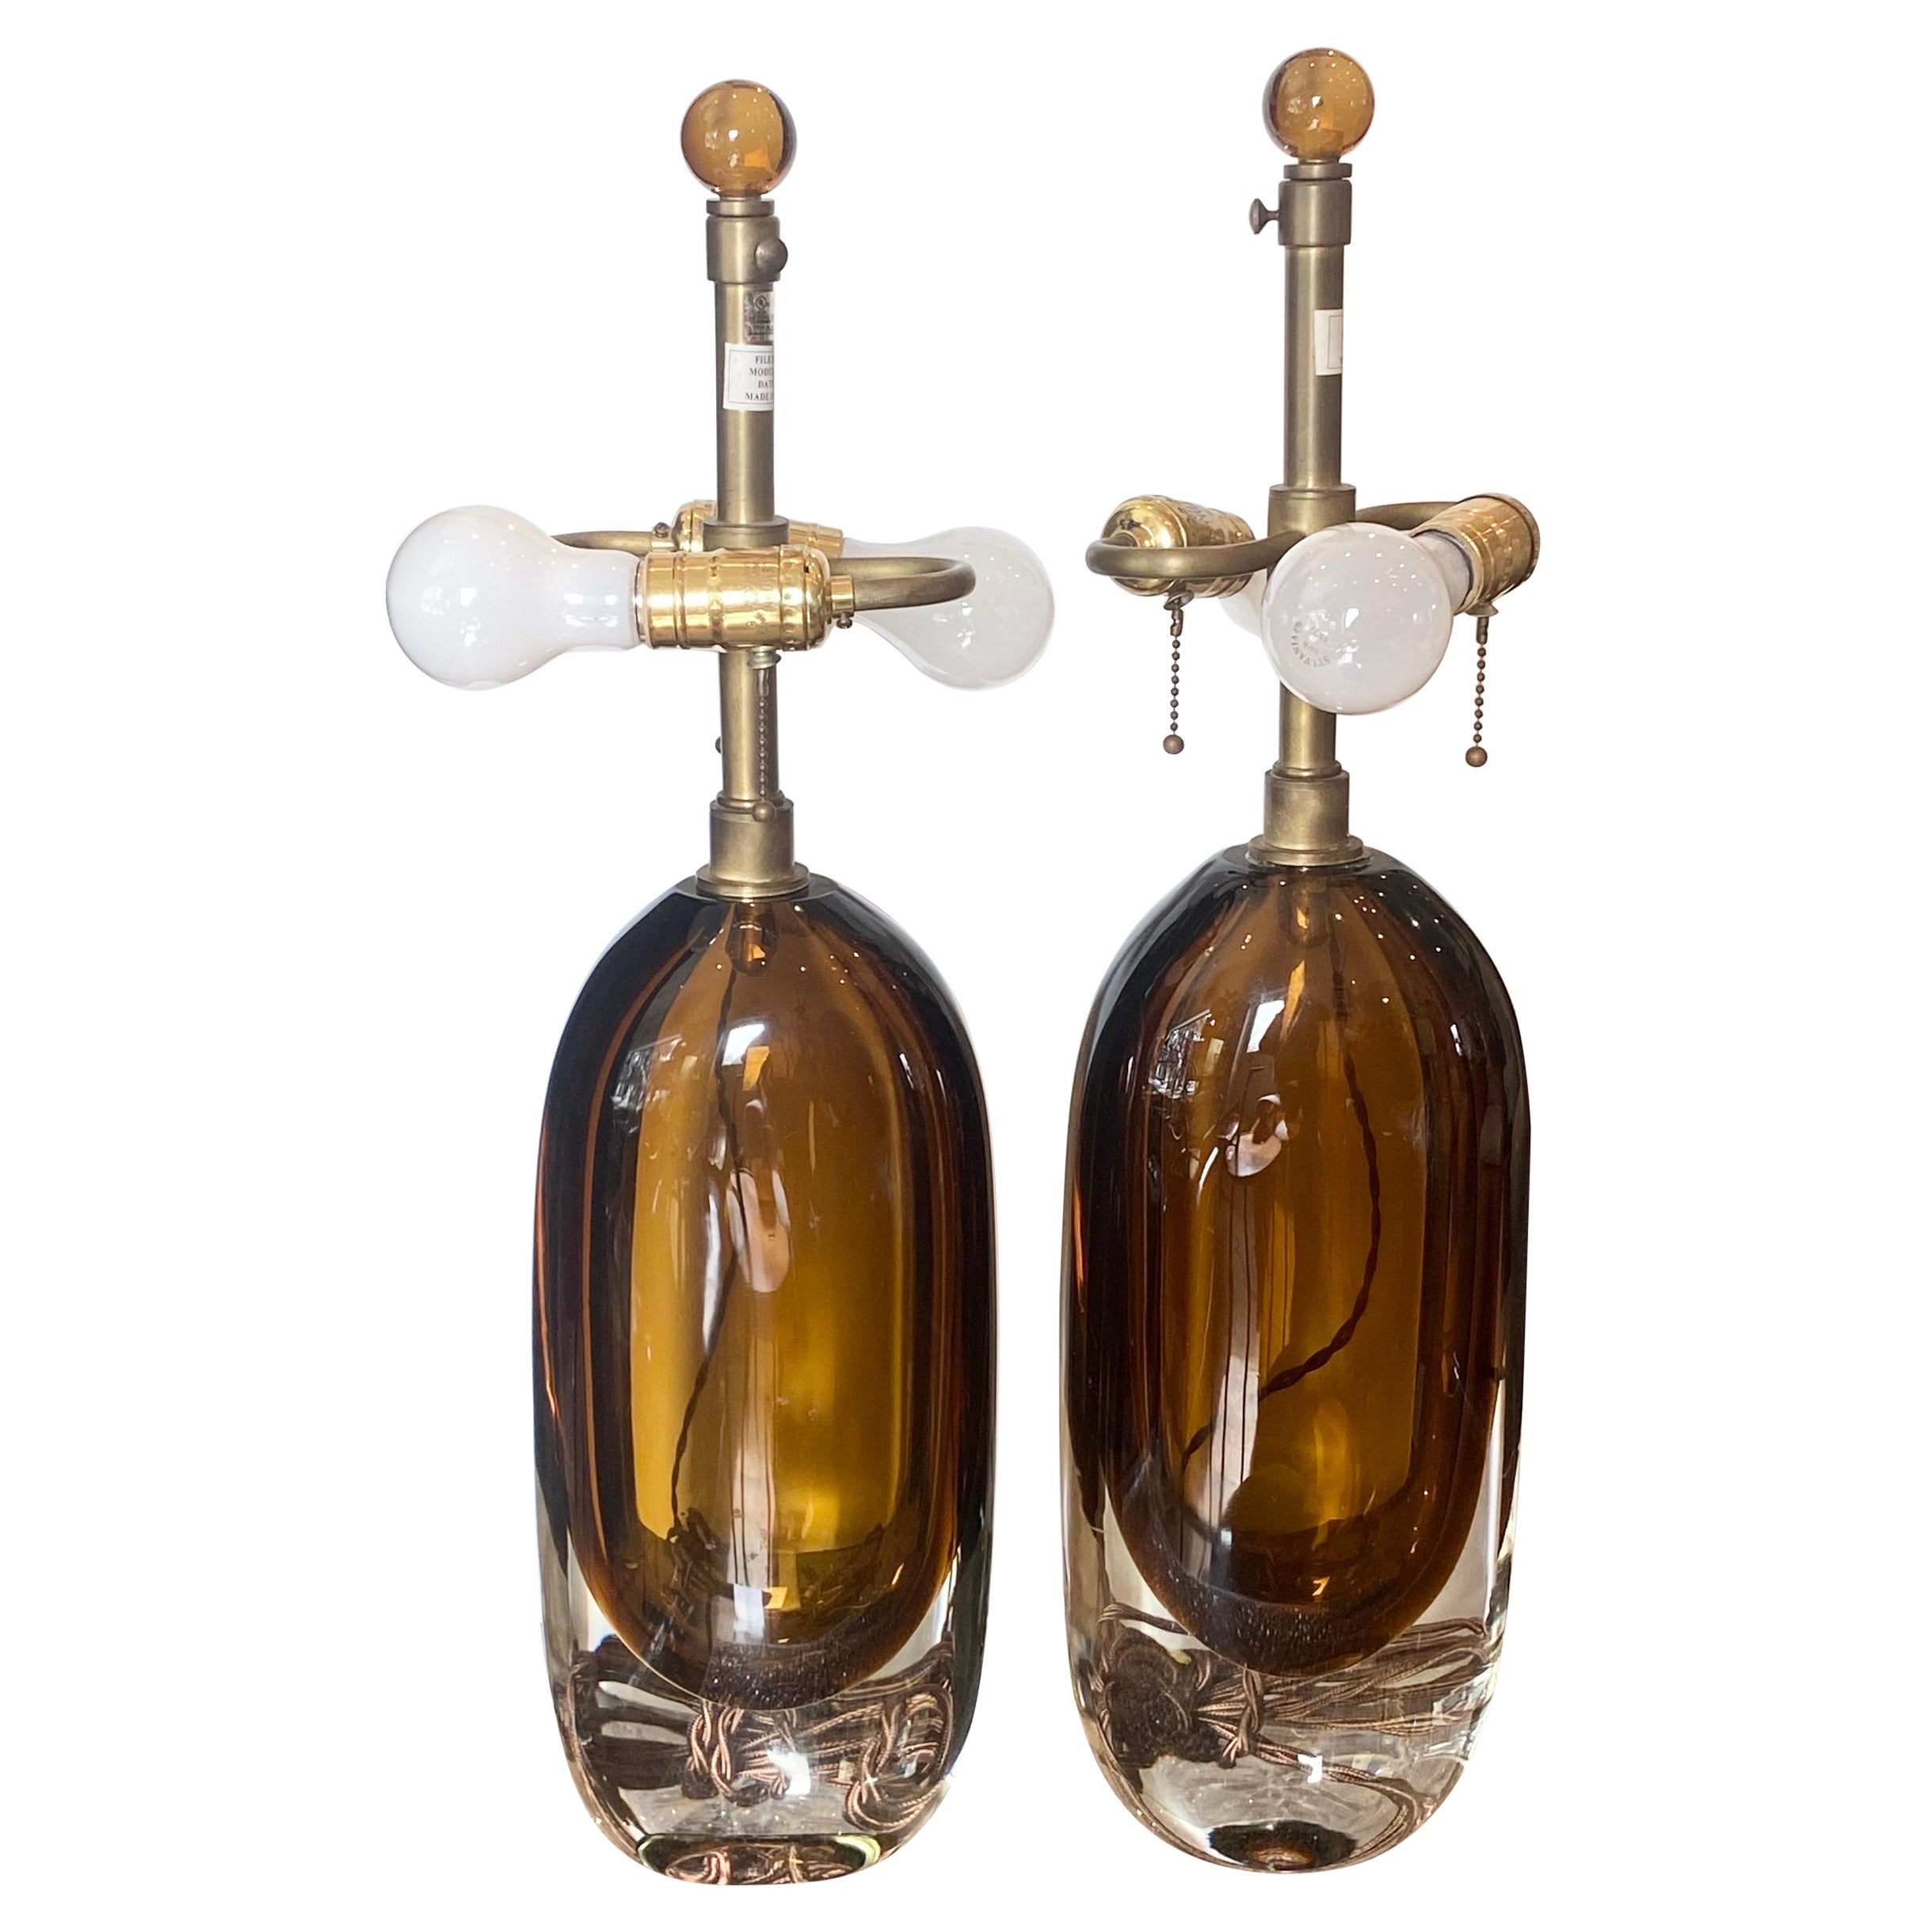 Pair of Italian Murano Glass Lamps